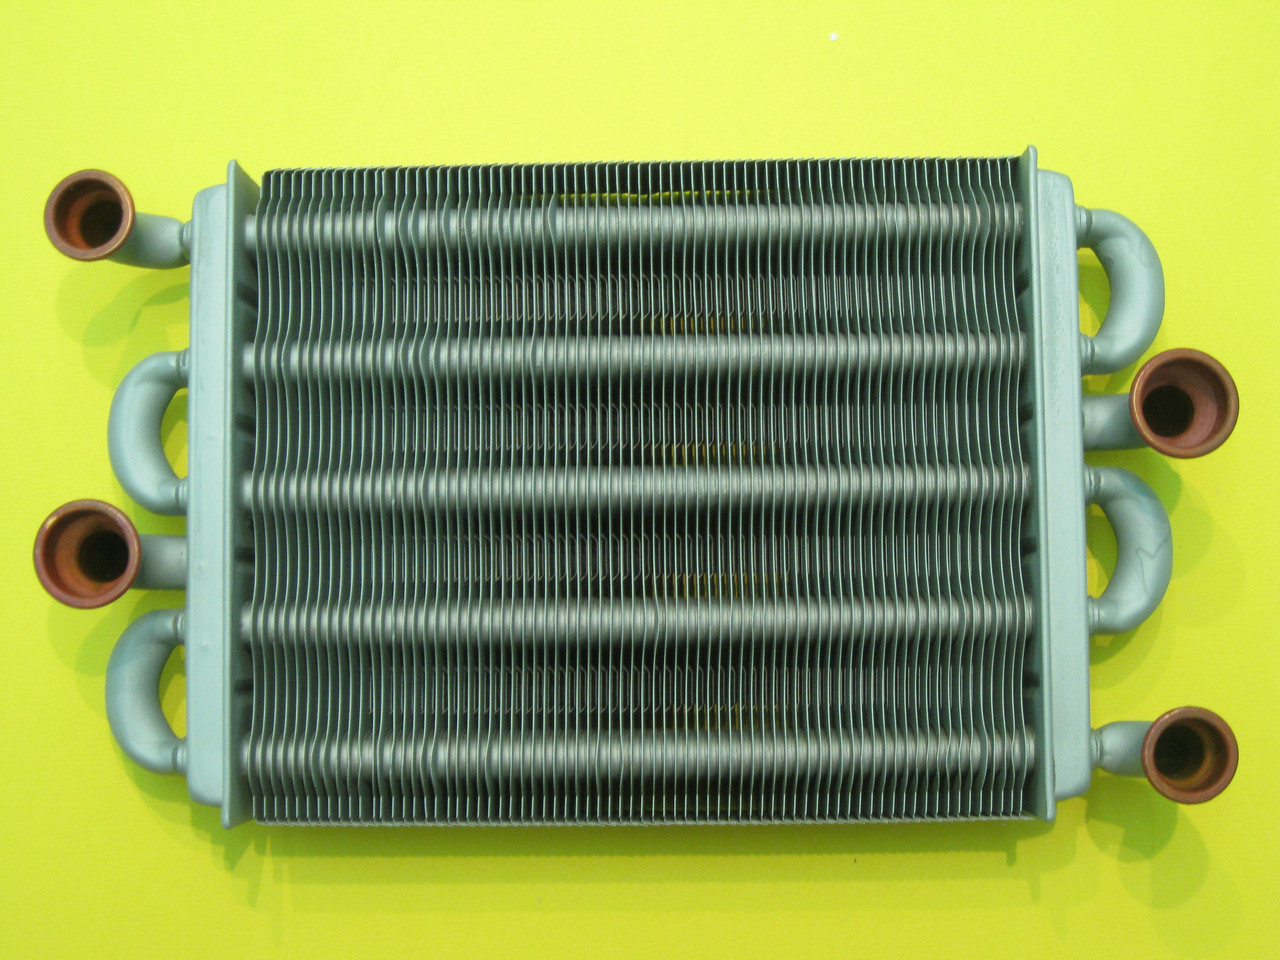 Бітермічний теплообмінник 3003202564 (D003202564) оригінал Demrad Nepto HKT 2-20, HKT 2-24